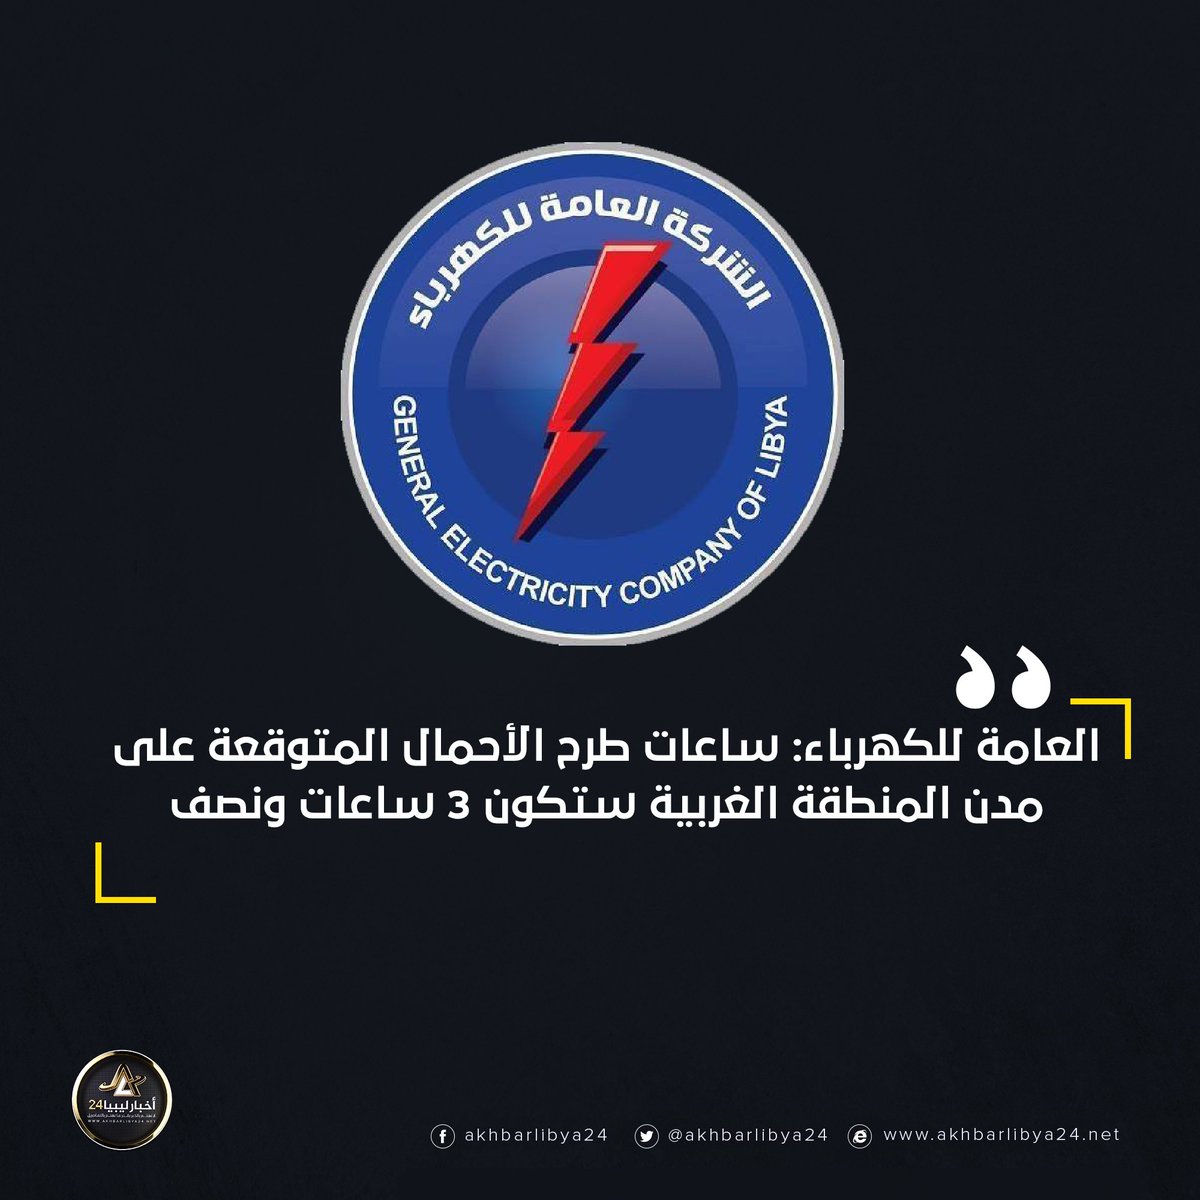 أخبارليبيا24 العامة للكهرباء ساعات طرح الأحمال المتوقعة على مدن المنطقة الغربية ستكون 3 ساعات ونصف ليبيا